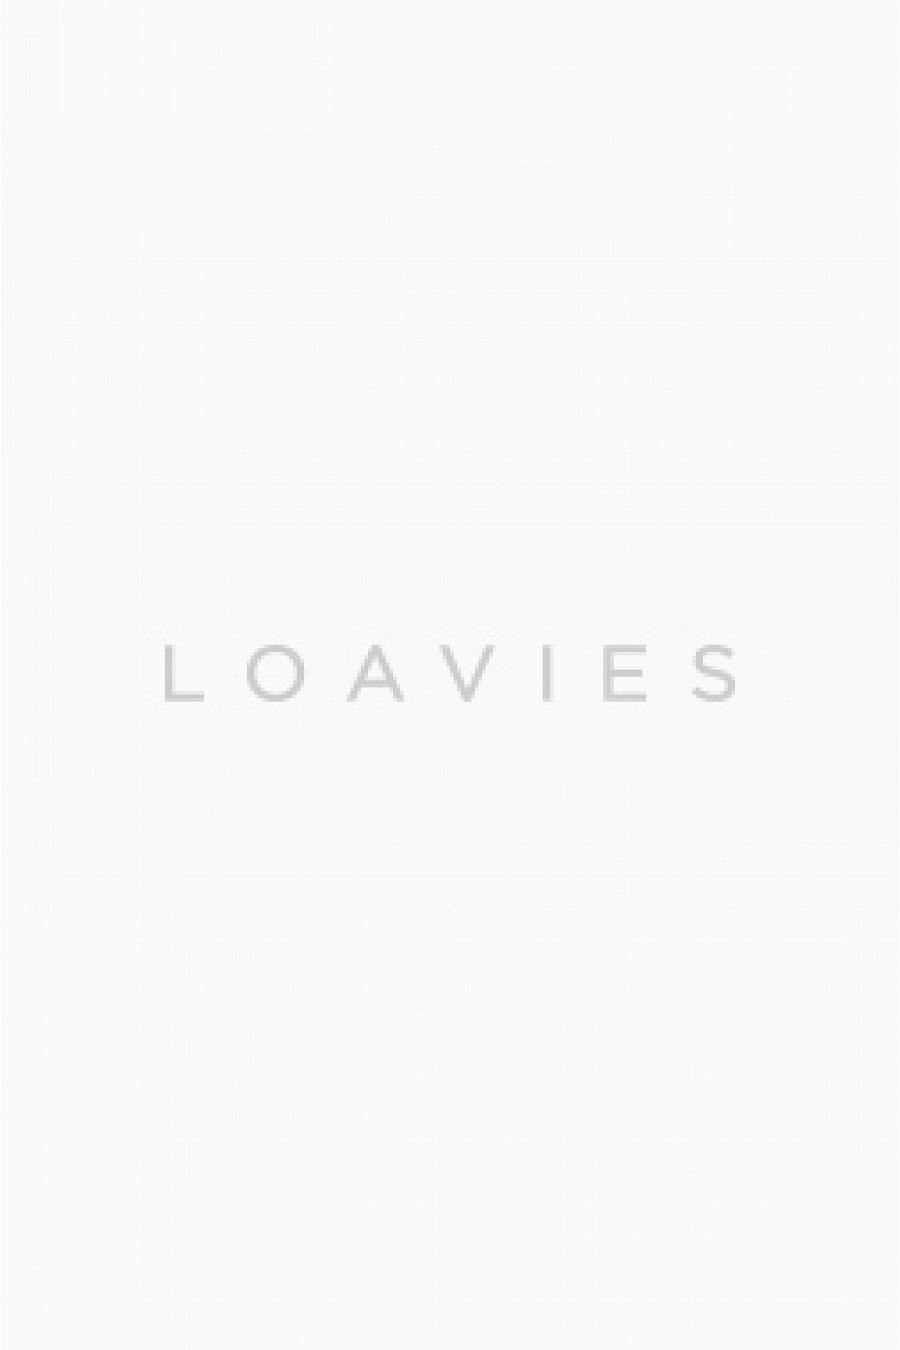 Rode | Loavies